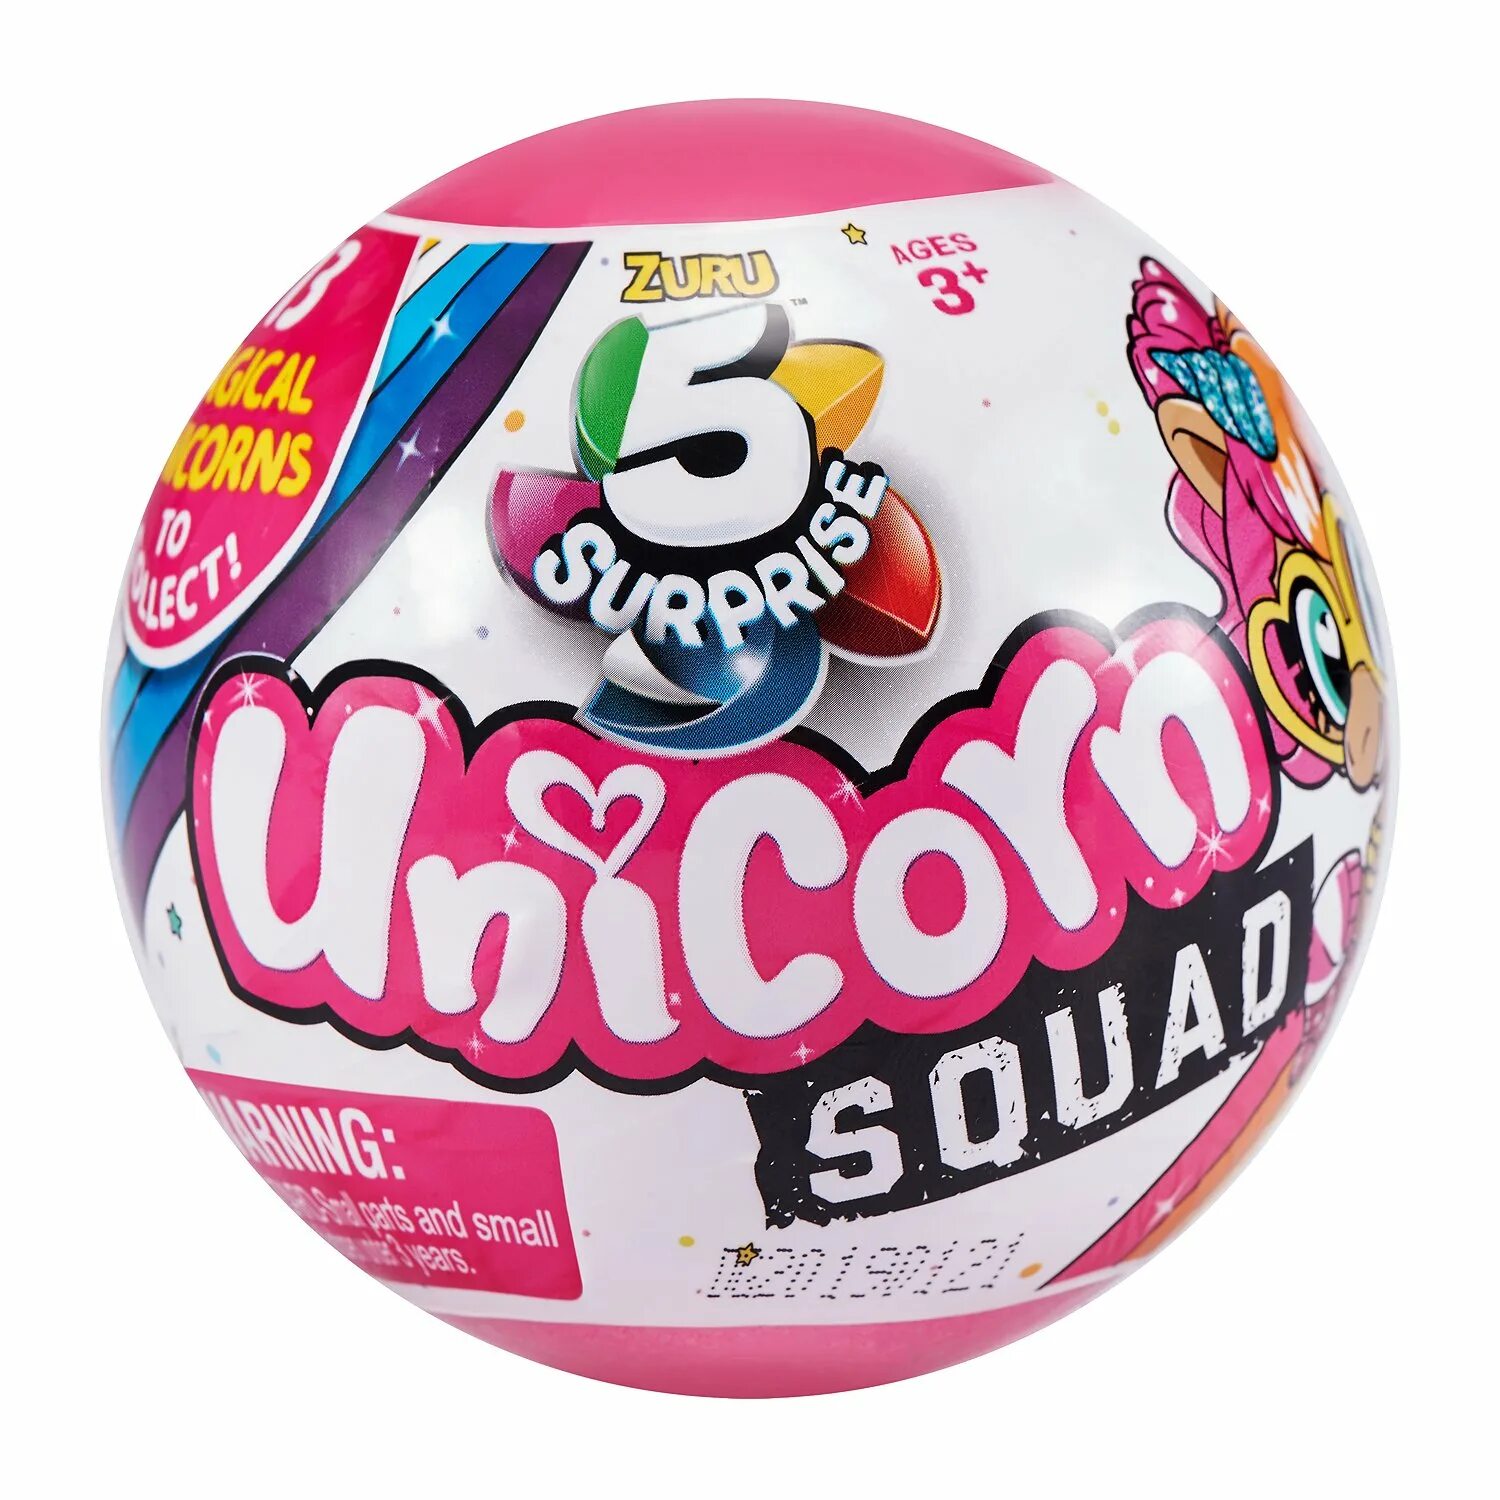 Игрушки 5 сюрпризов. Zuru Unicorn Squad. Unicorn Squad игрушка шар. Игрушка 5 сюрпризов. Шар сюрприз с игрушкой.